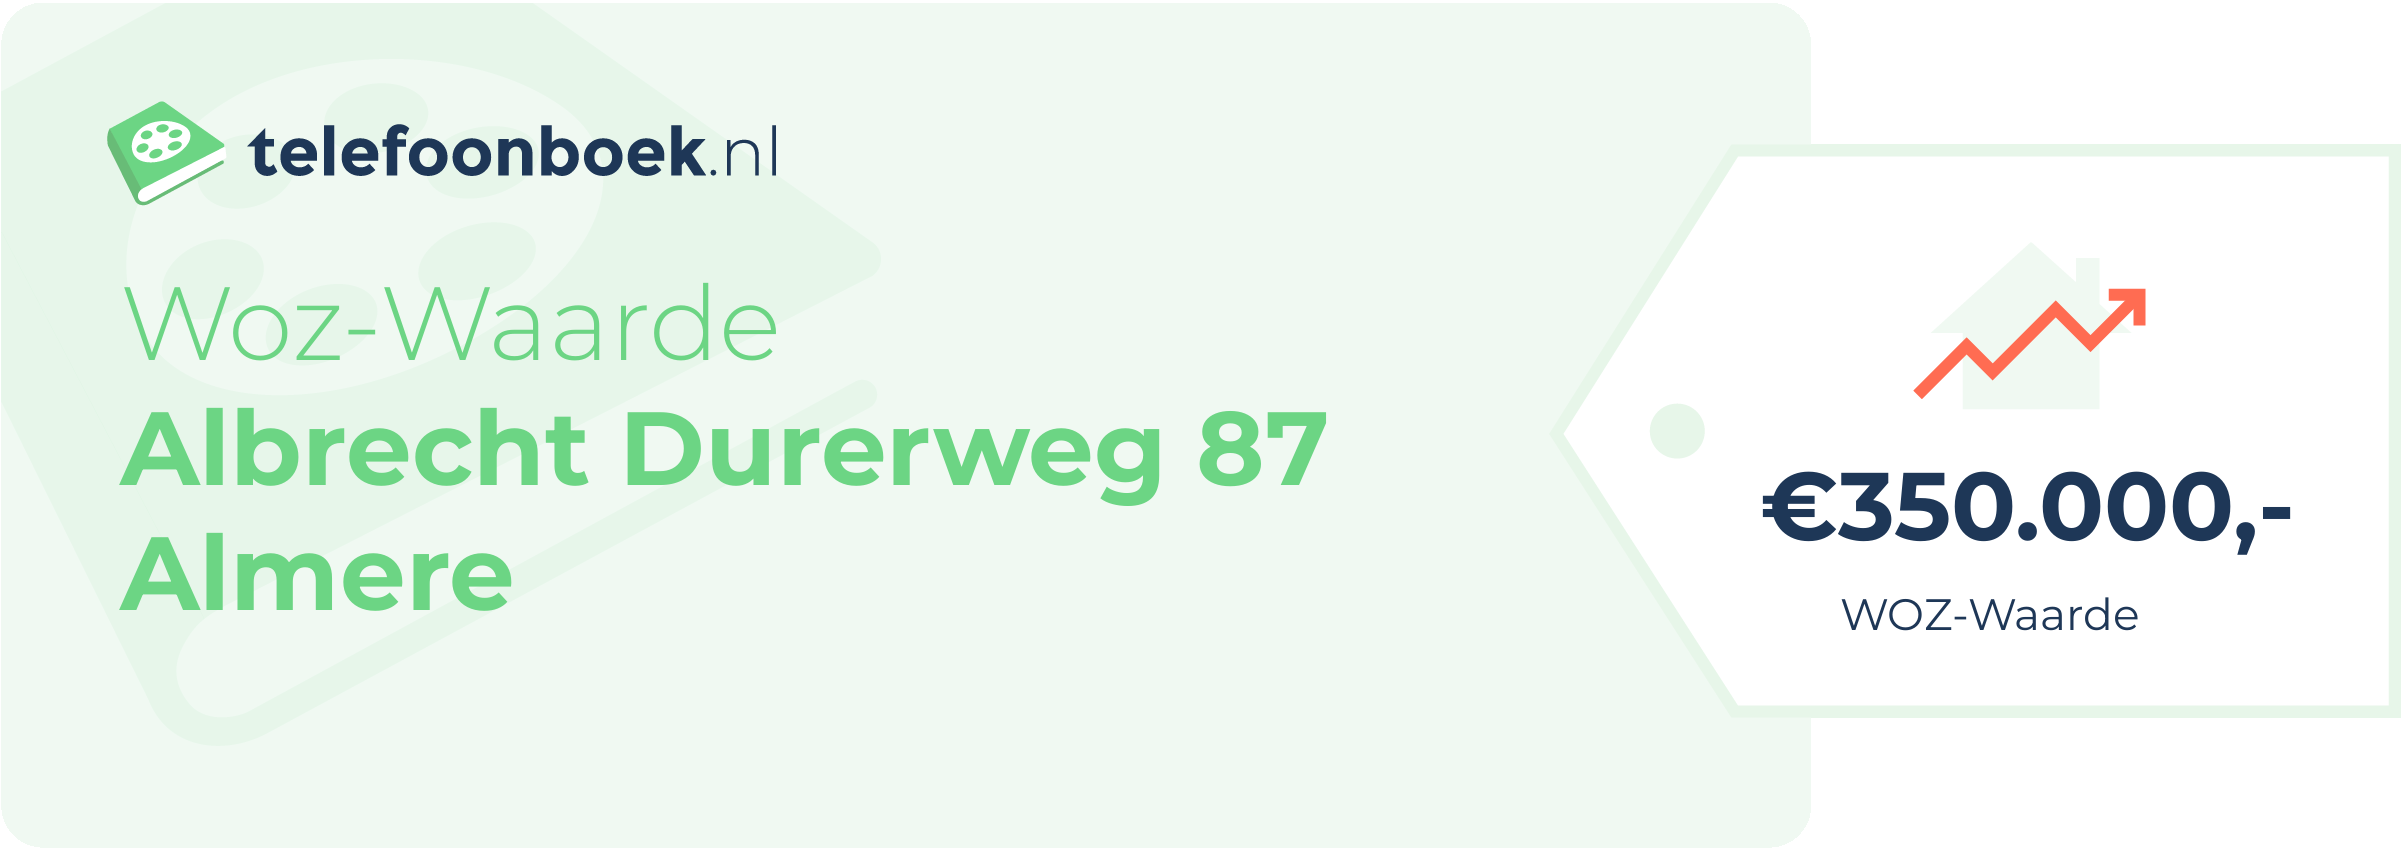 WOZ-waarde Albrecht Durerweg 87 Almere